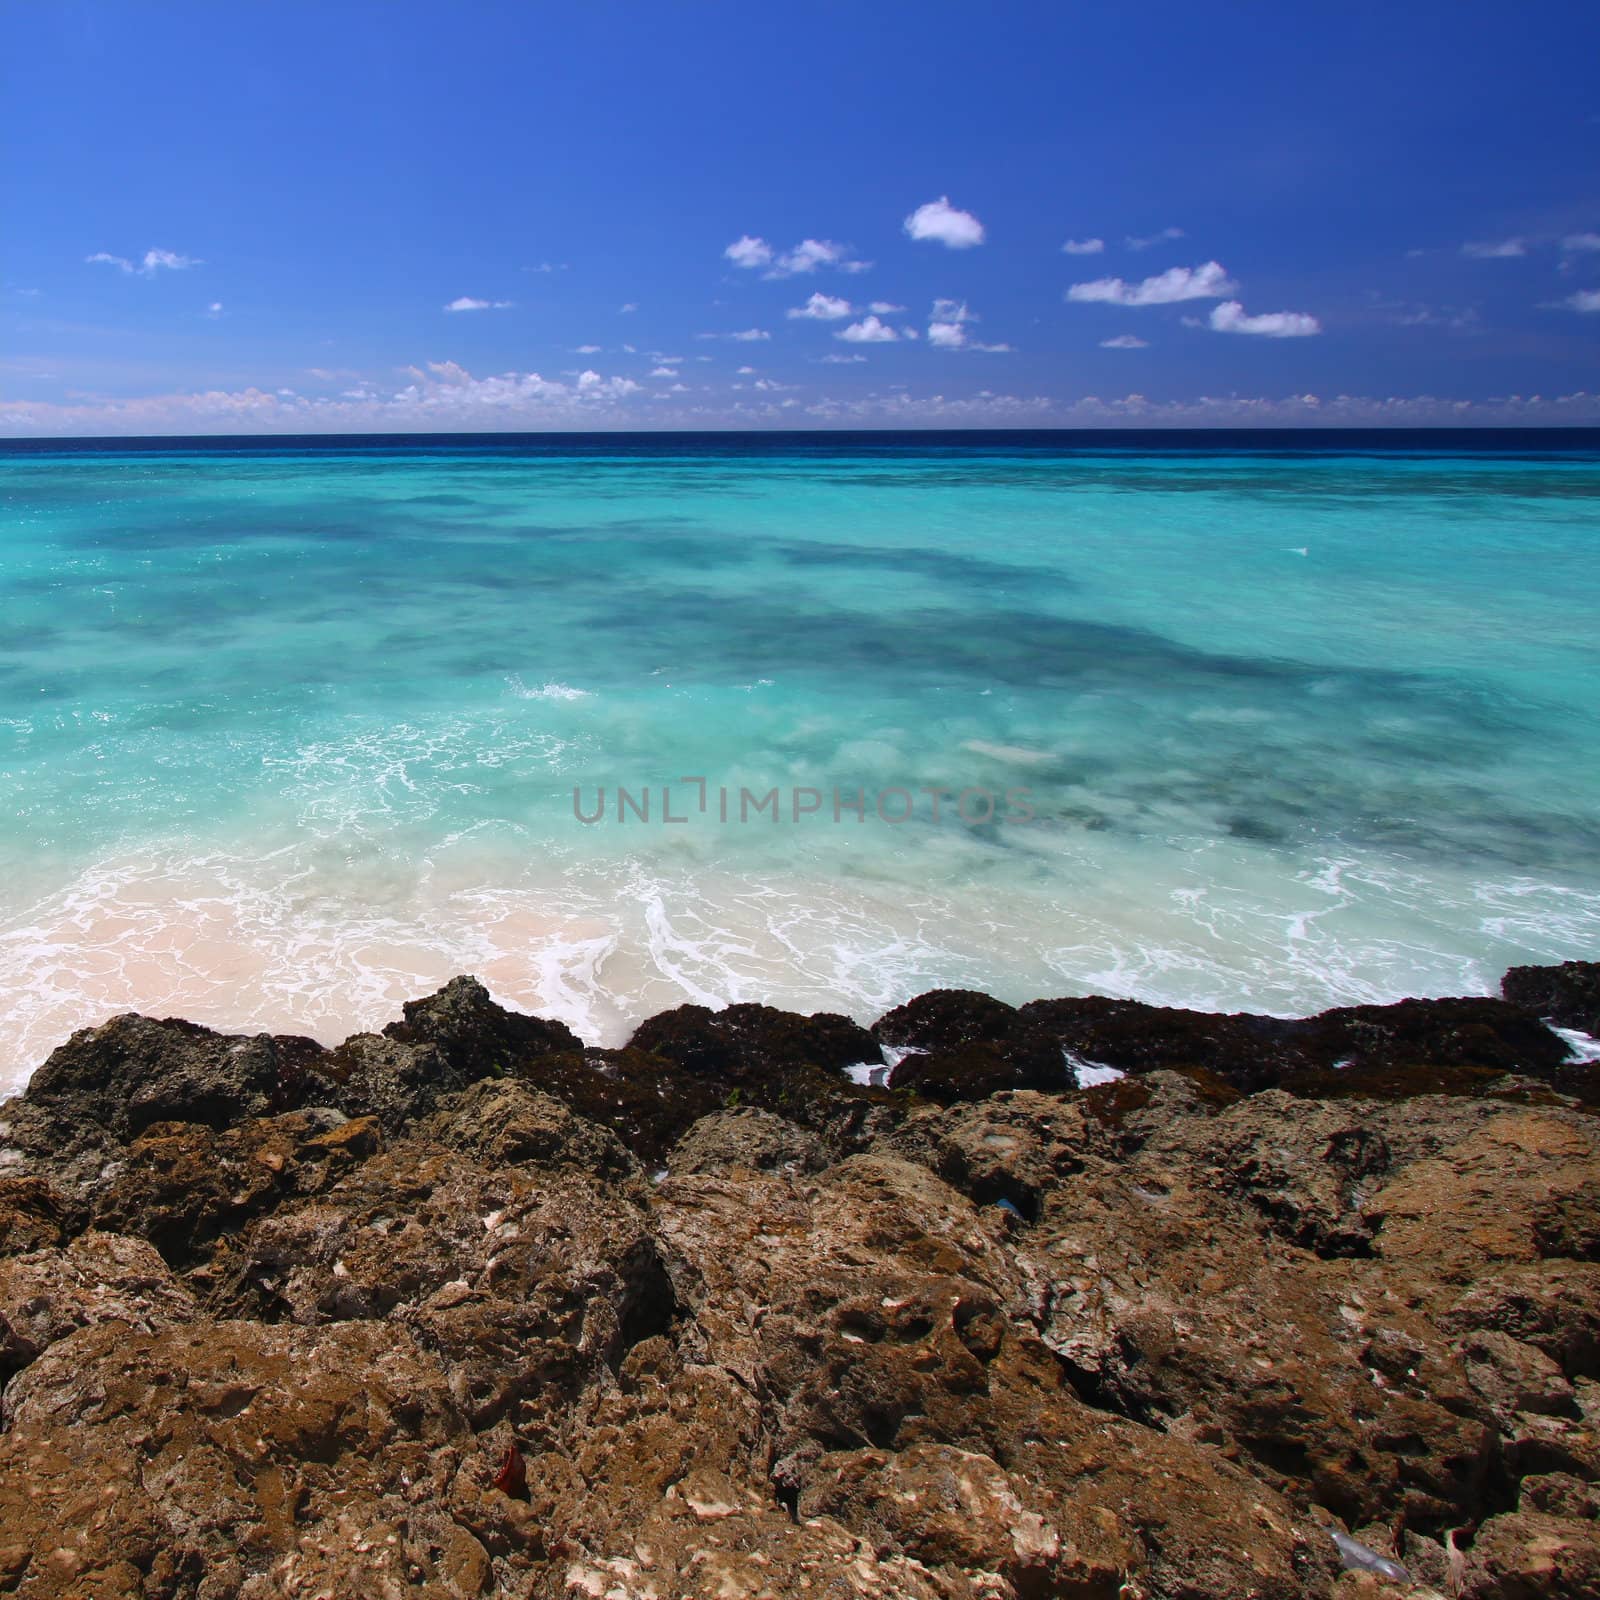 Rocky coastline of Barbados by Wirepec